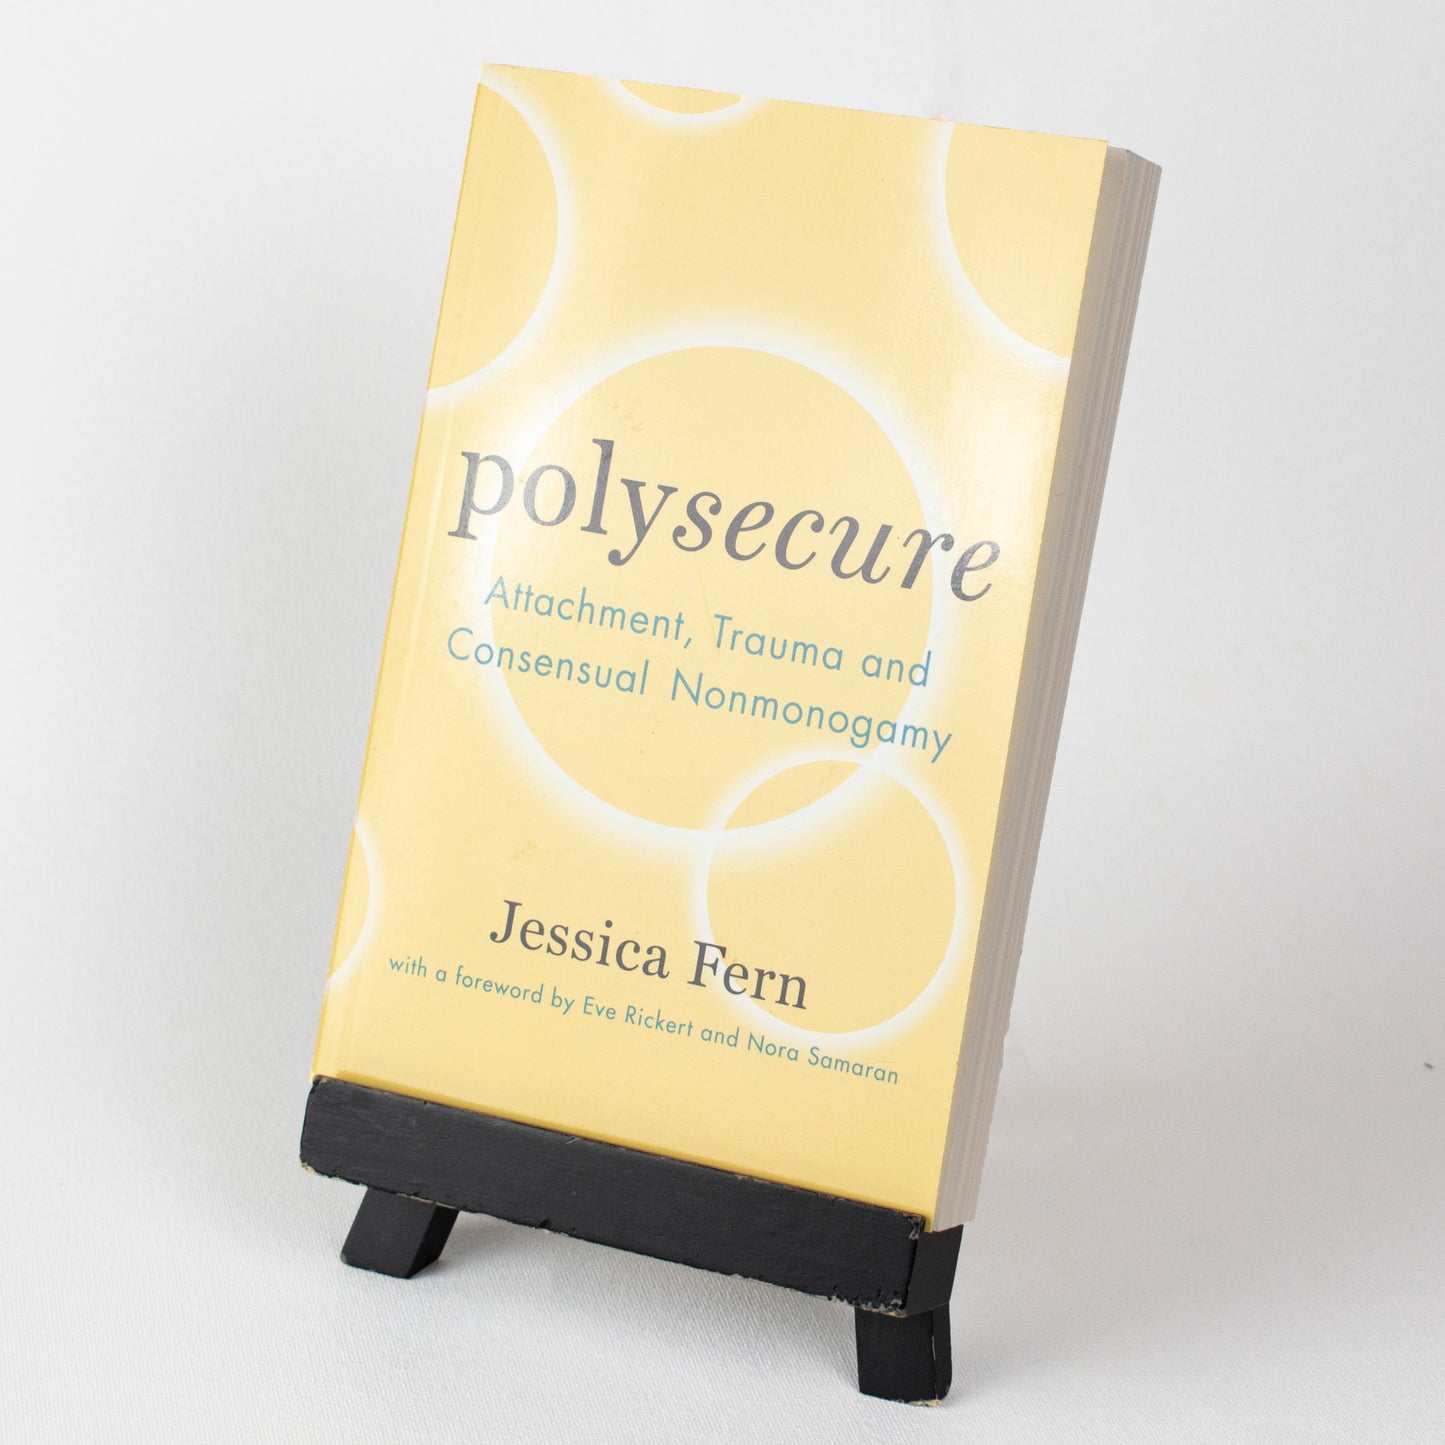 Polysecure: apego, trauma y no monogamia consensuada